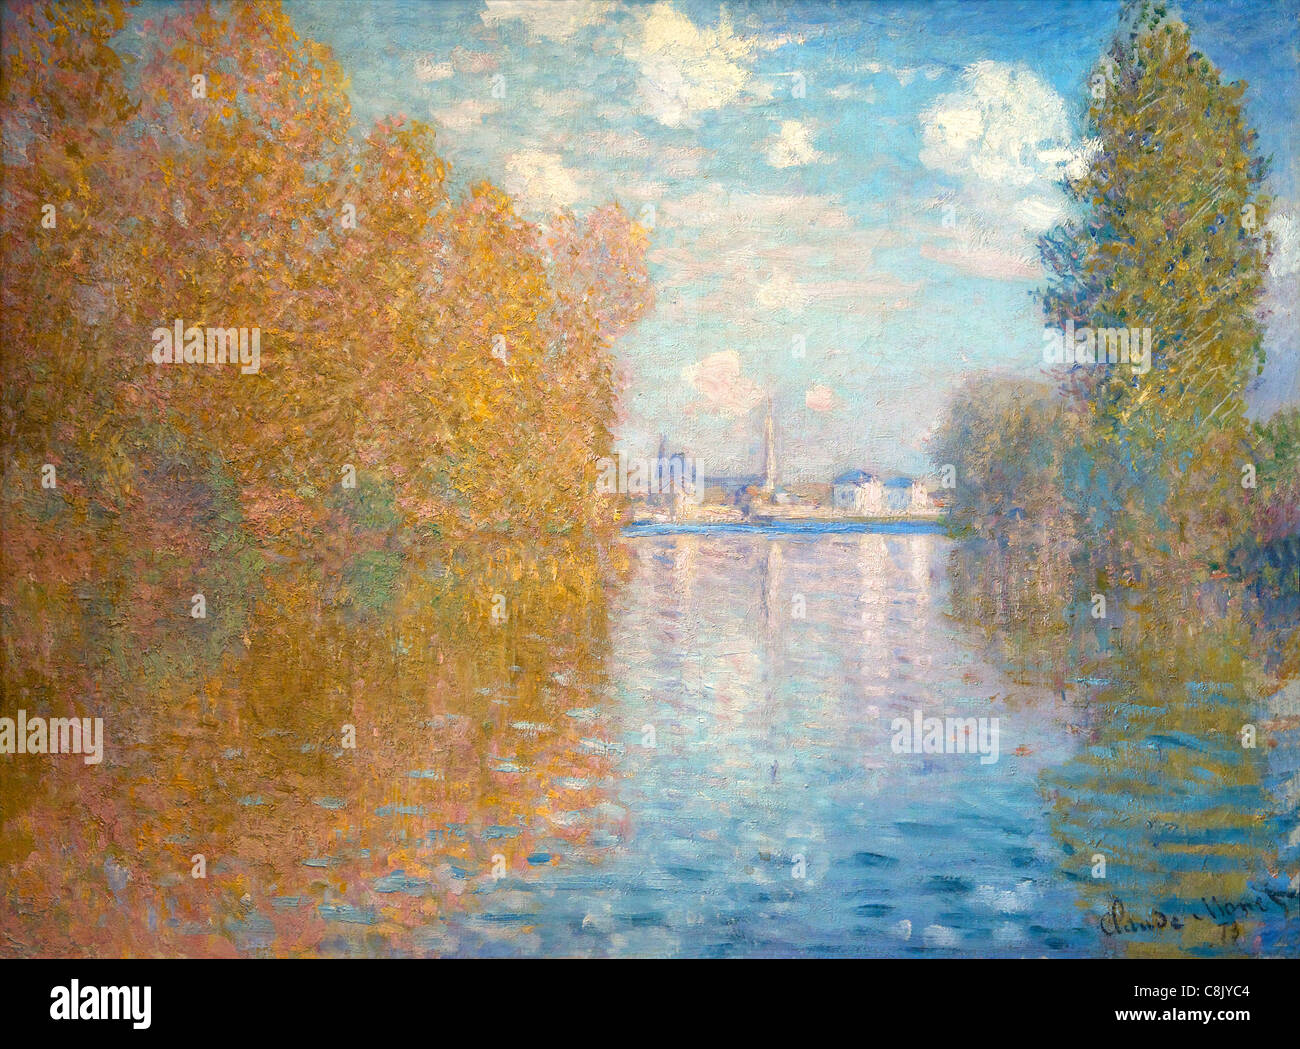 Effet d'automne à Argenteuil, Claude Monet, 1873, Galerie Courtauld, Somerset House, Londres, Angleterre, Royaume-Uni, GB Banque D'Images